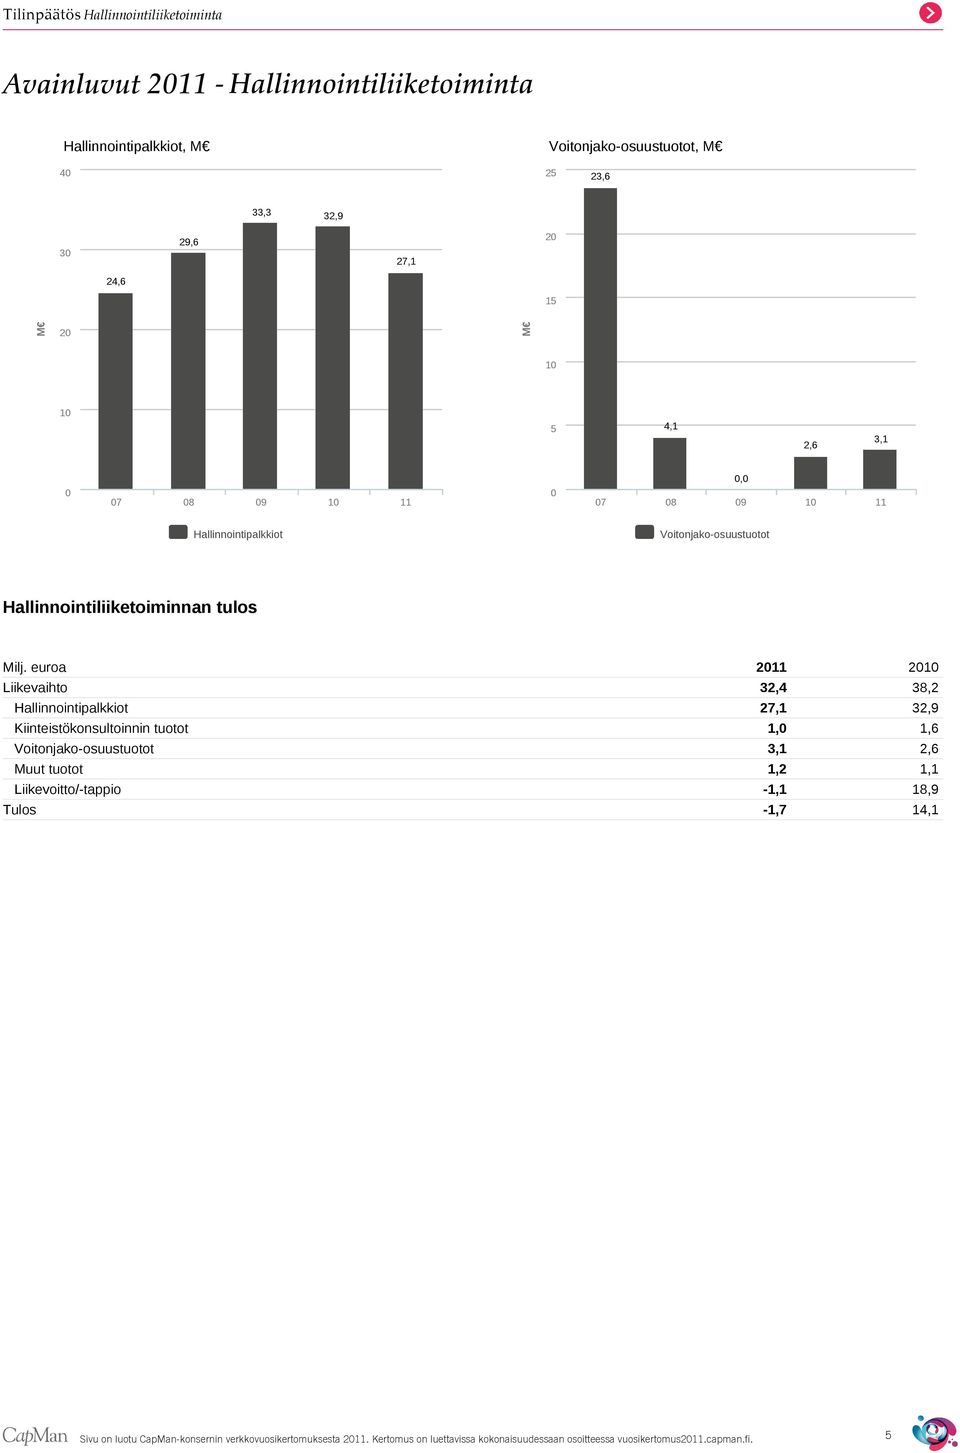 euroa 2011 2010 Liikevaihto 32,4 38,2 Hallinnointipalkkiot 27,1 32,9 Kiinteistökonsultoinnin tuotot 1,0 1,6 Voitonjako-osuustuotot 3,1 2,6 Muut tuotot 1,2 1,1